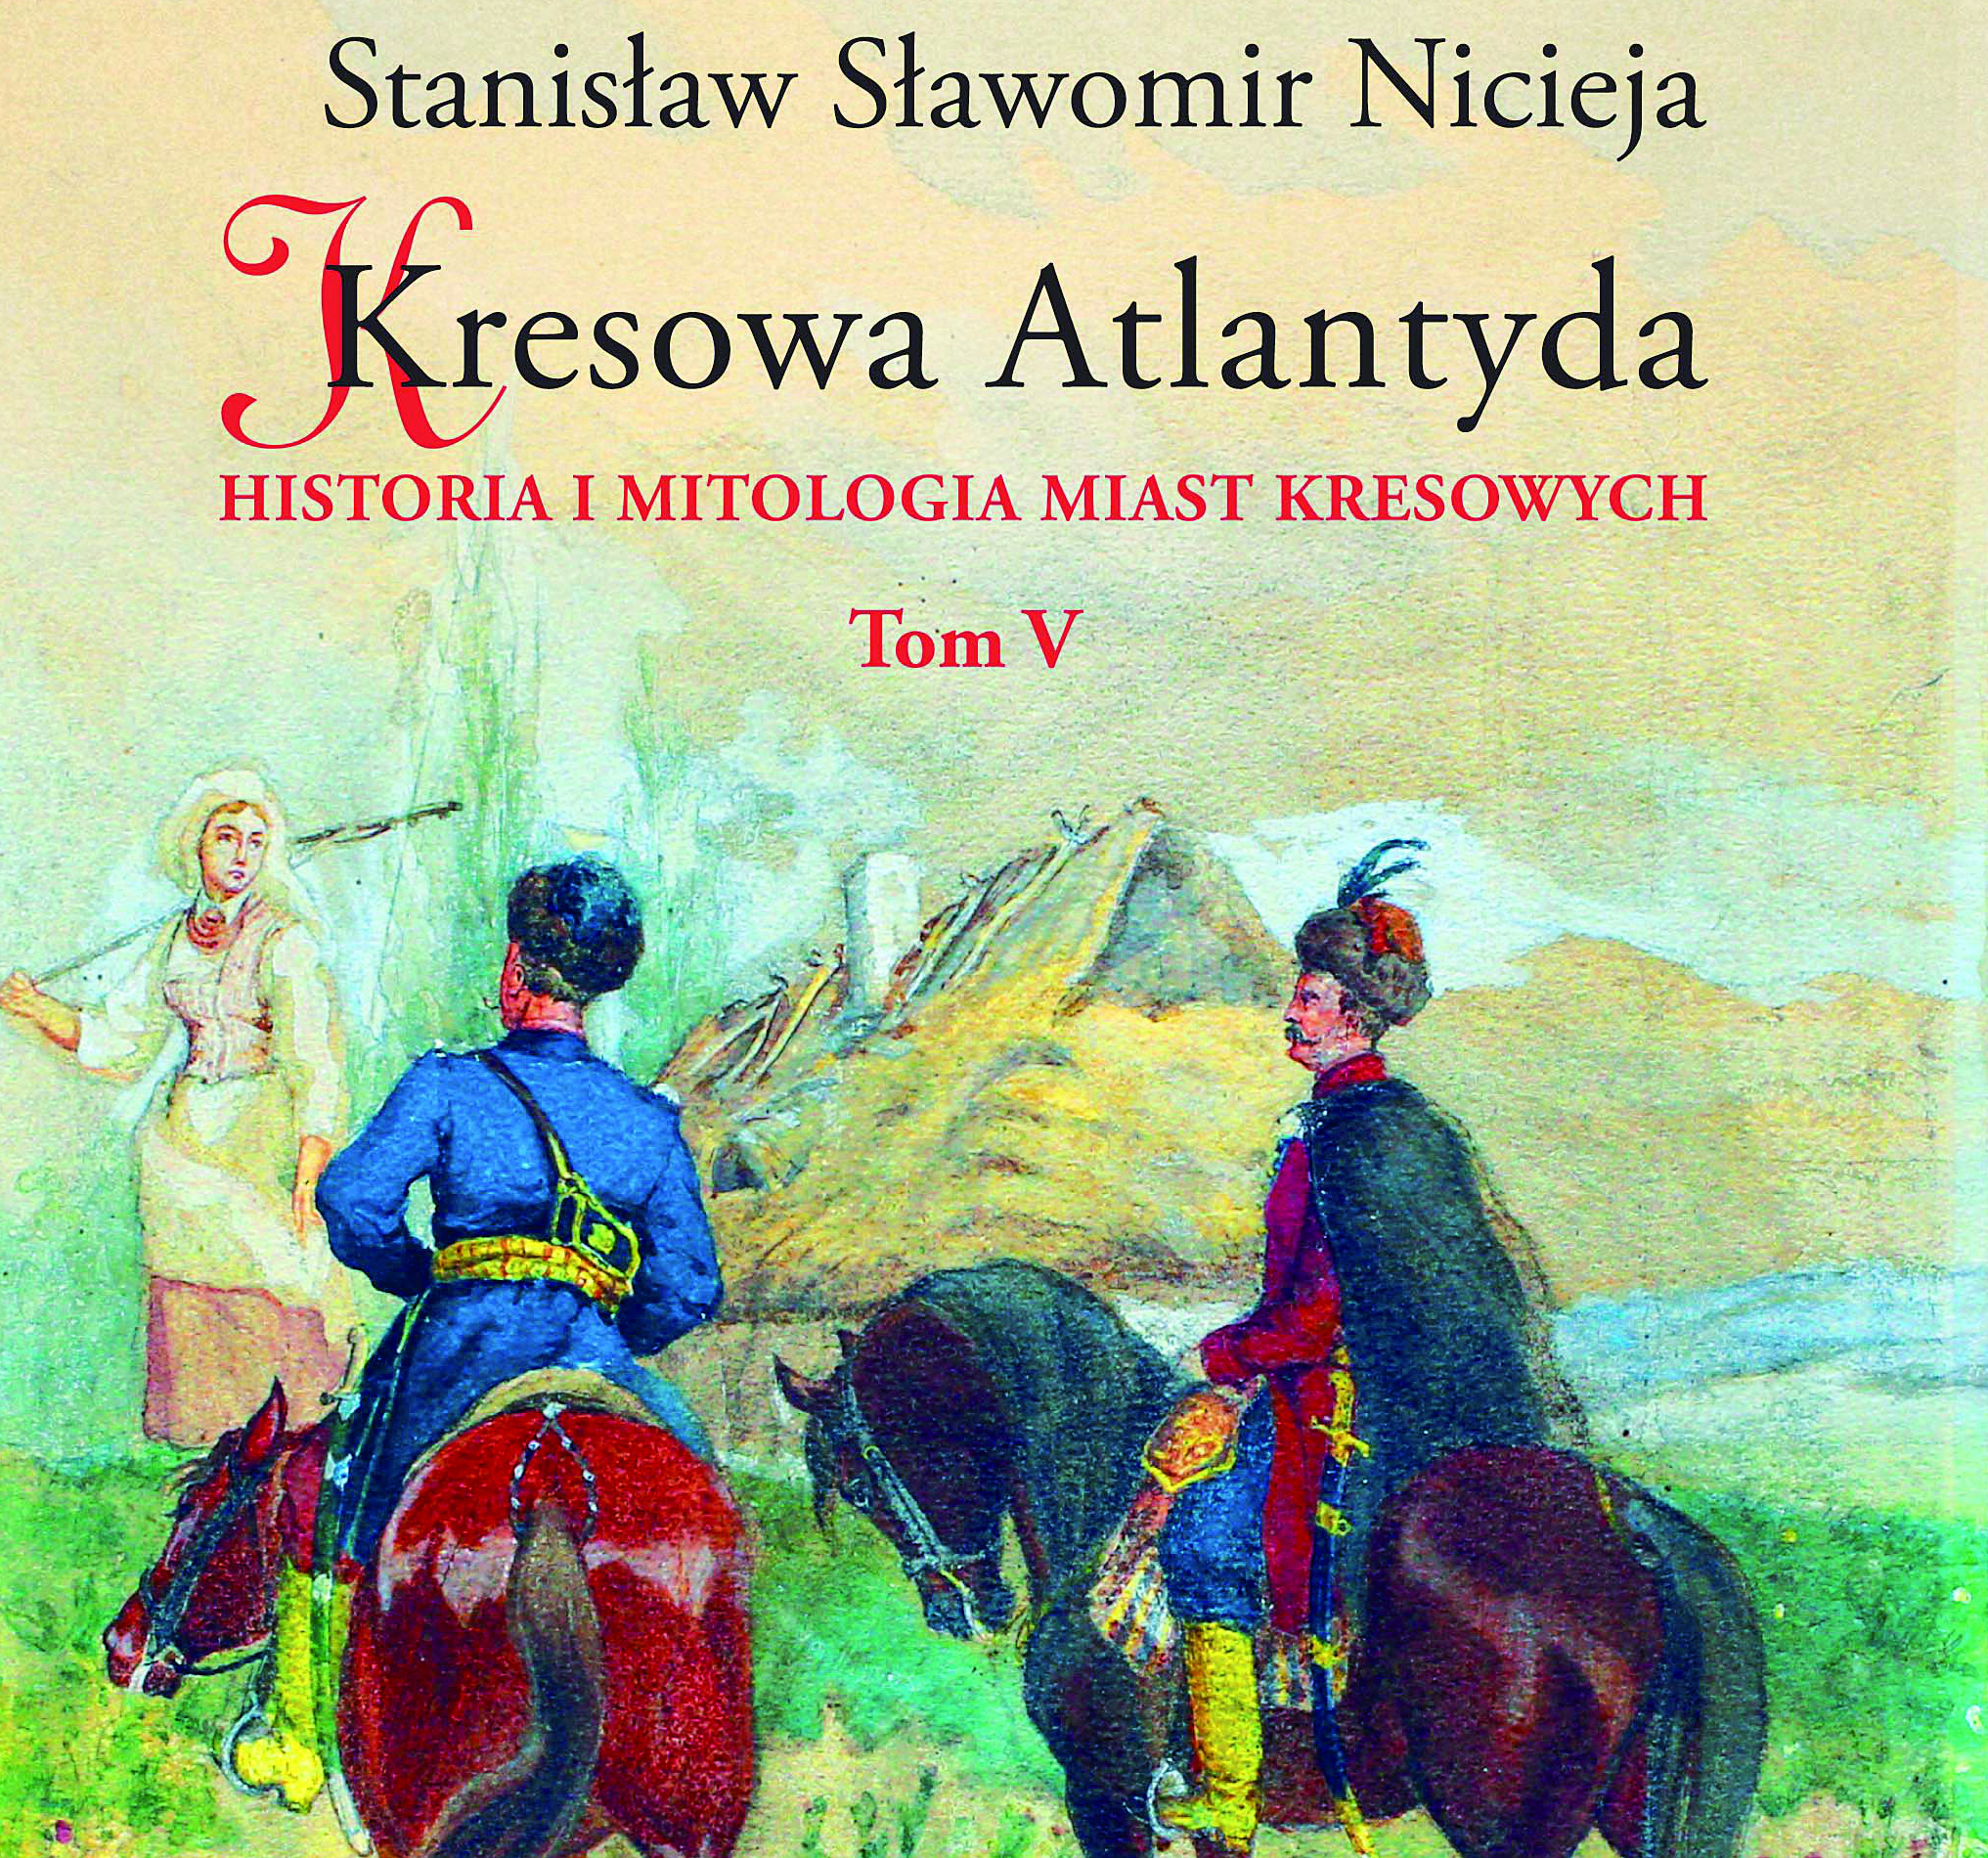 Zdjęcie nagłówkowe otwierające podstronę: Ukazał się piąty tom "Kresowej Atlantydy" prof. Stanisława S. Nicieji